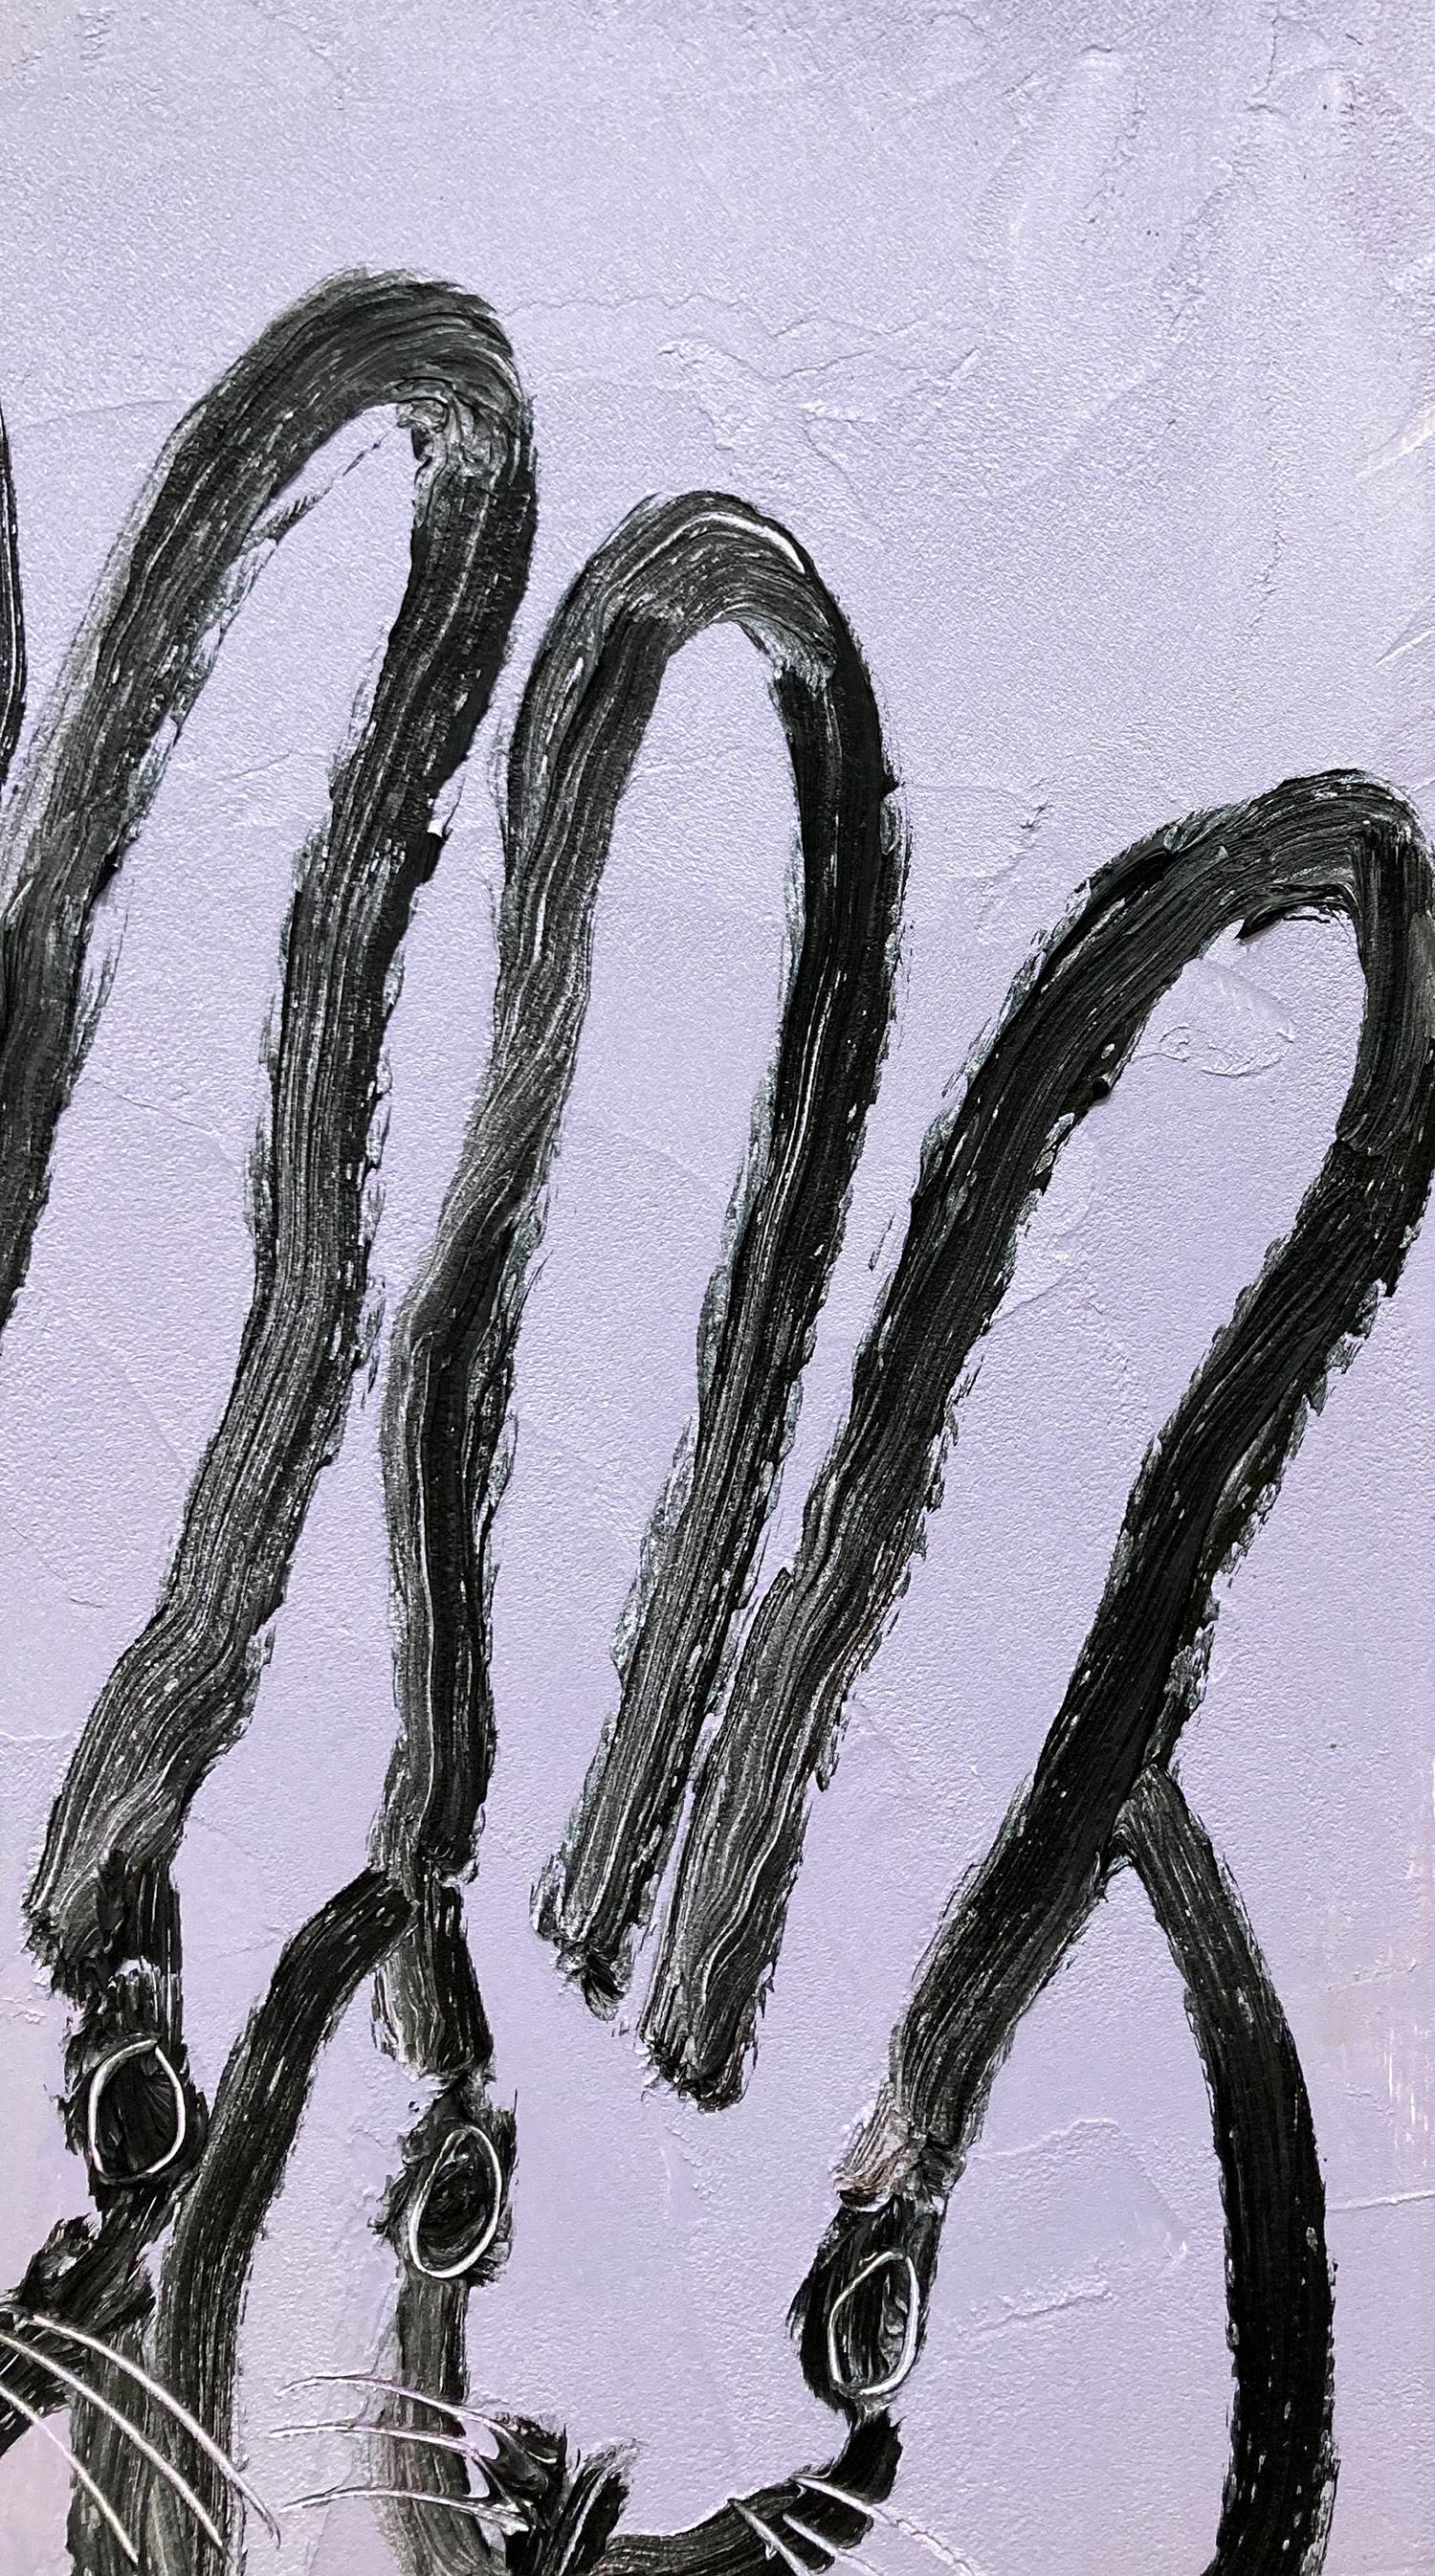 Eine wunderbare Komposition eines der ikonischsten Themen von Slonem, nämlich Hasen. Dieses Werk zeigt 3 gestische Figuren von schwarzen Hasen auf einem hellen lavendelfarbenen Hintergrund mit dickem Farbauftrag. Es ist in einem wunderschönen